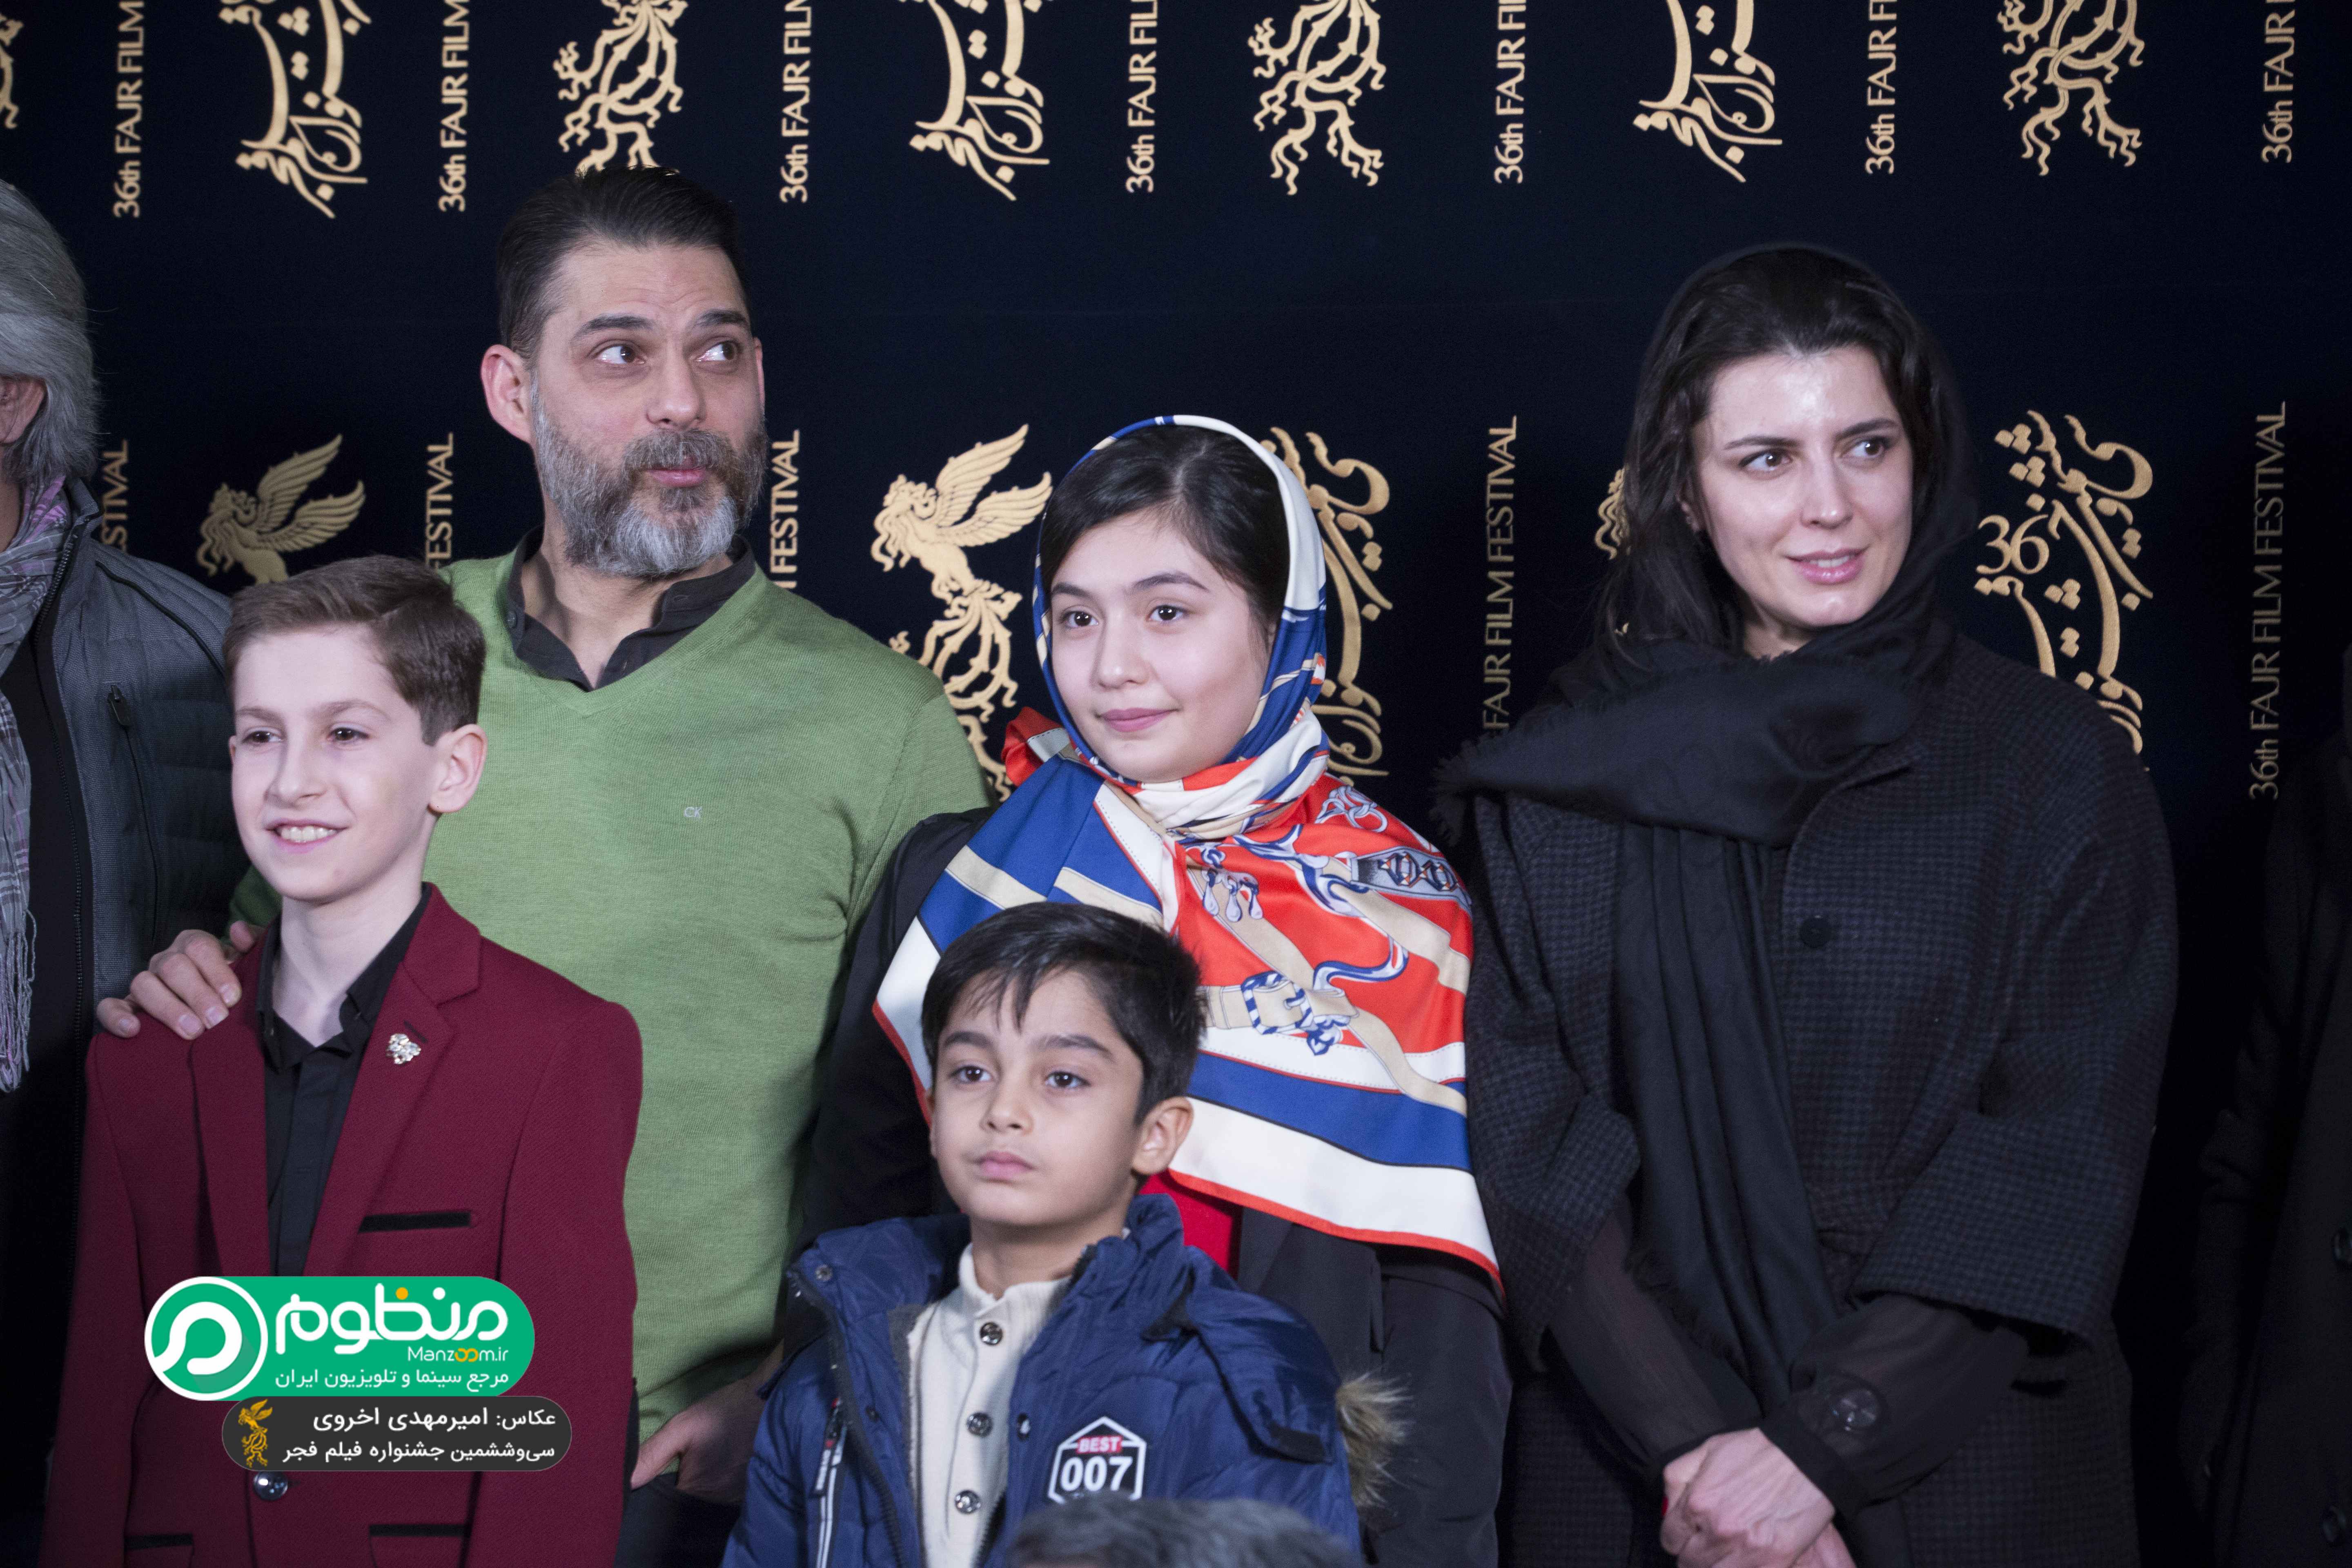 باران معادی در جشنواره فیلم سینمایی بمب؛ یک عاشقانه به همراه ارشیا عبداللهی، پیمان معادی و لیلا حاتمی